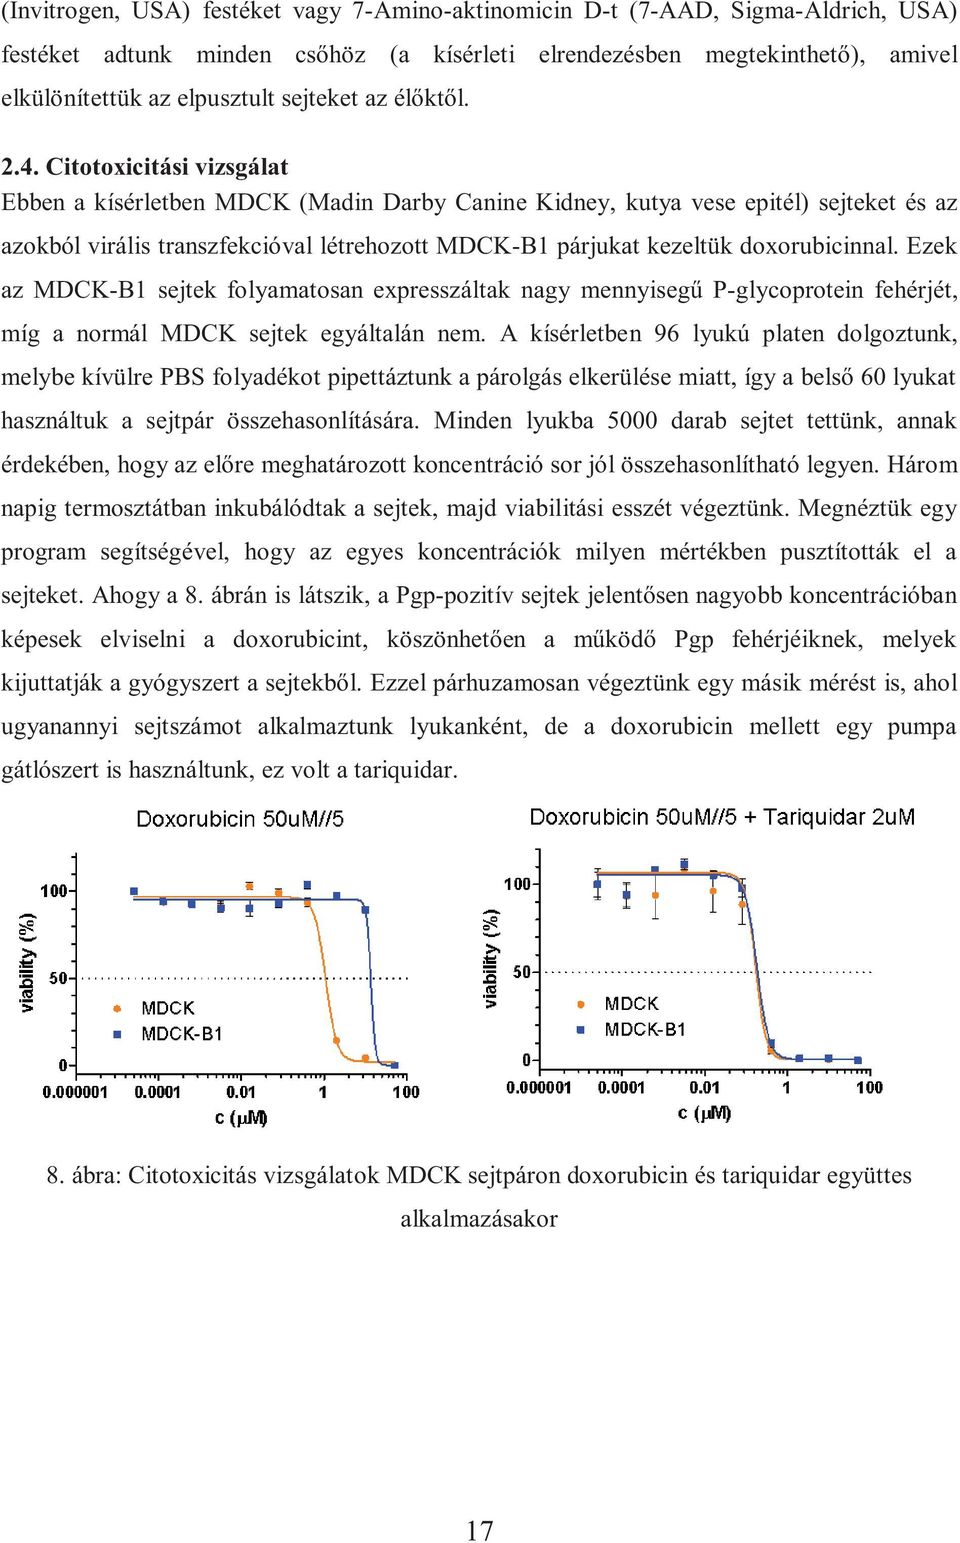 Citotoxicitási vizsgálat Ebben a kísérletben MDCK (Madin Darby Canine Kidney, kutya vese epitél) sejteket és az azokból virális transzfekcióval létrehozott MDCK-B1 párjukat kezeltük doxorubicinnal.